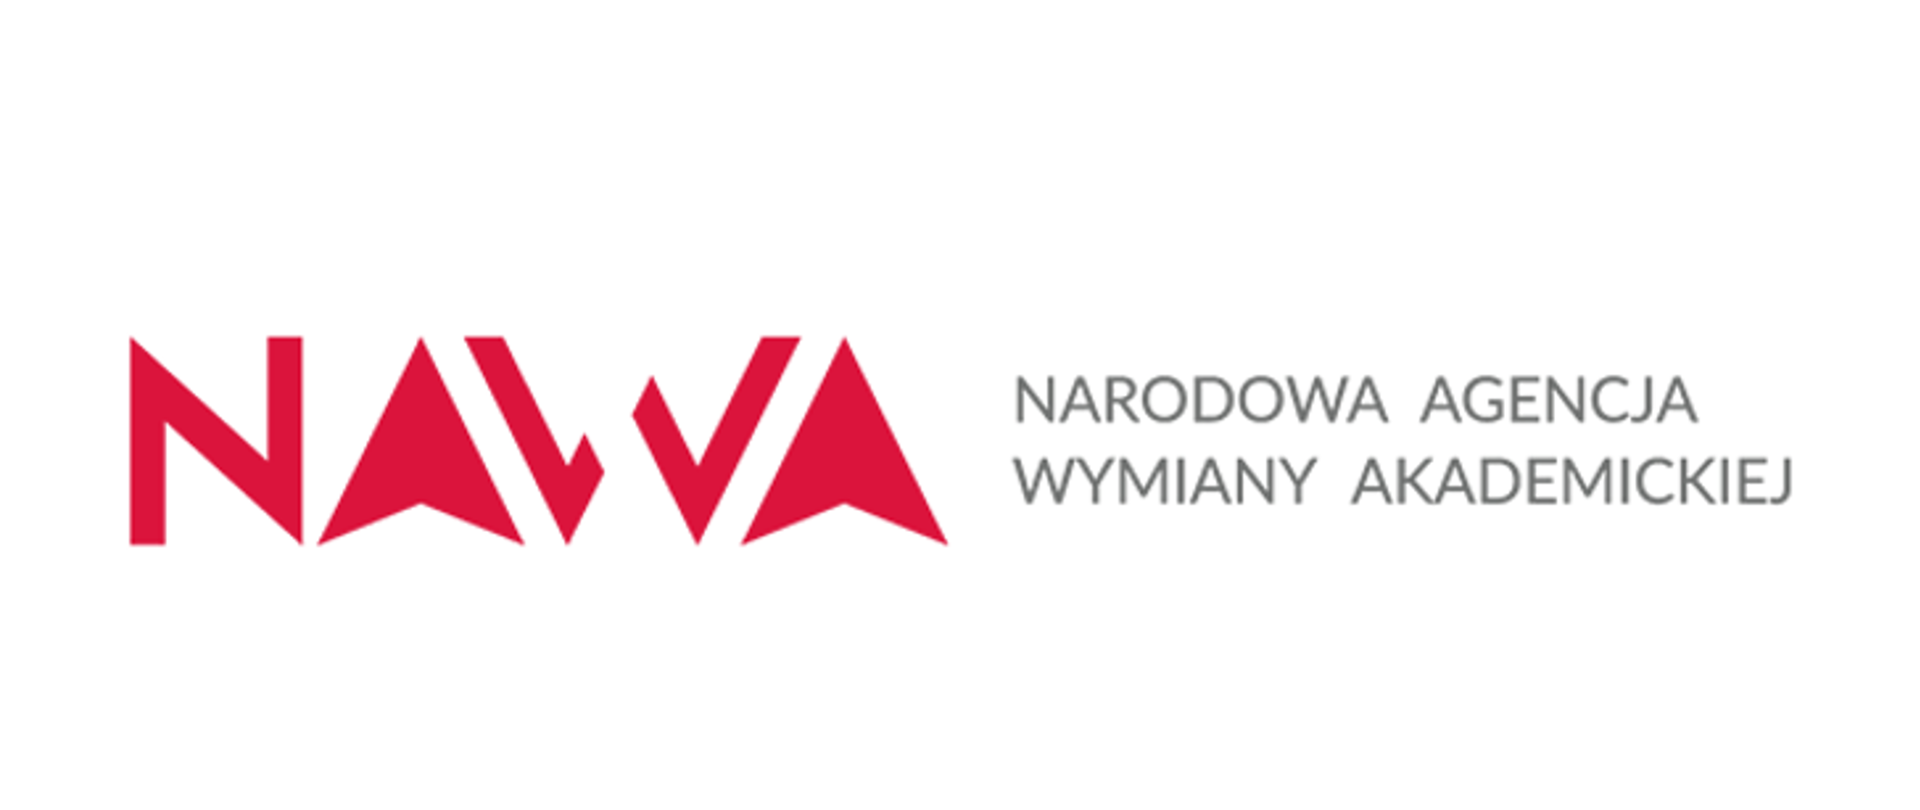 NAWA logo